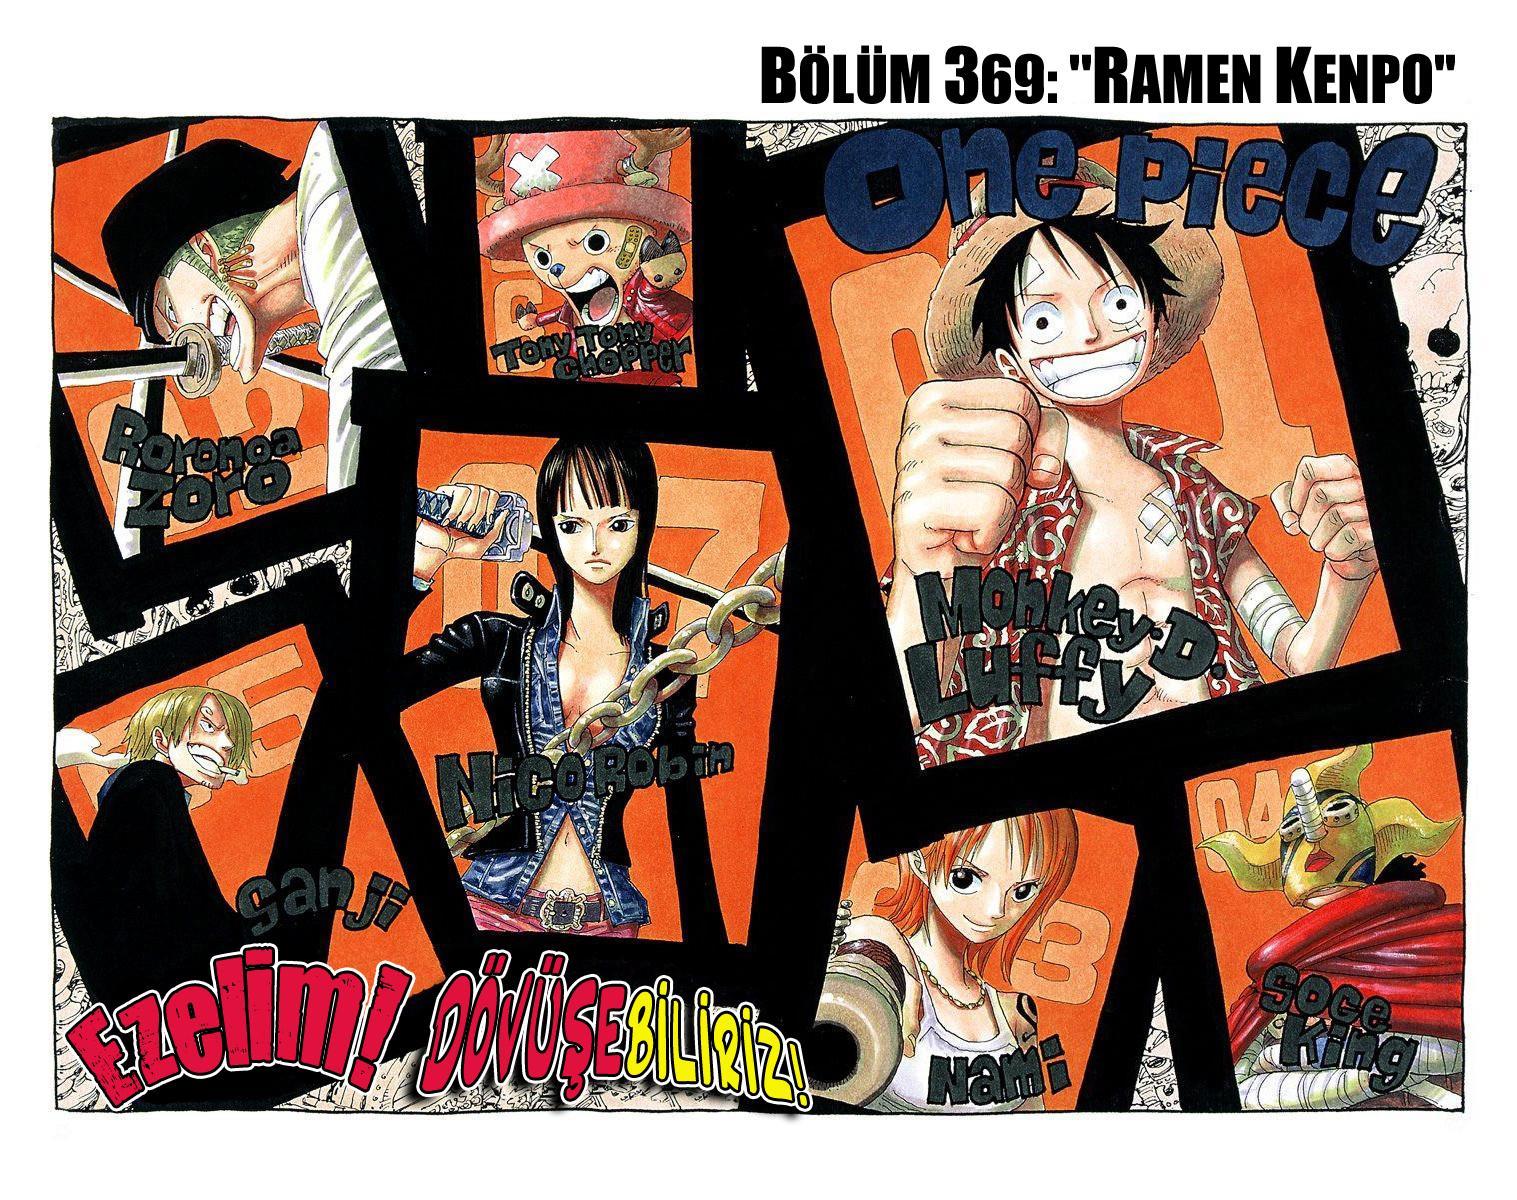 One Piece [Renkli] mangasının 0369 bölümünün 2. sayfasını okuyorsunuz.